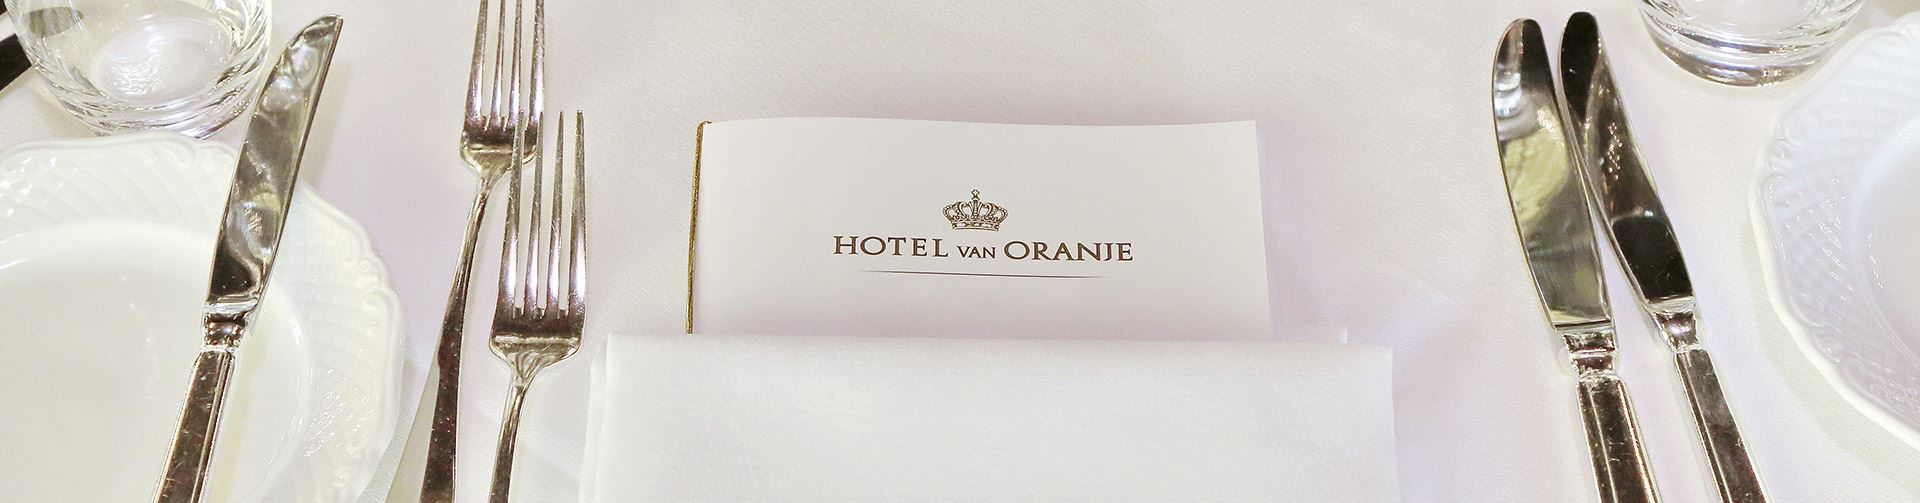 Diner Menukaart Hotel van Oranje